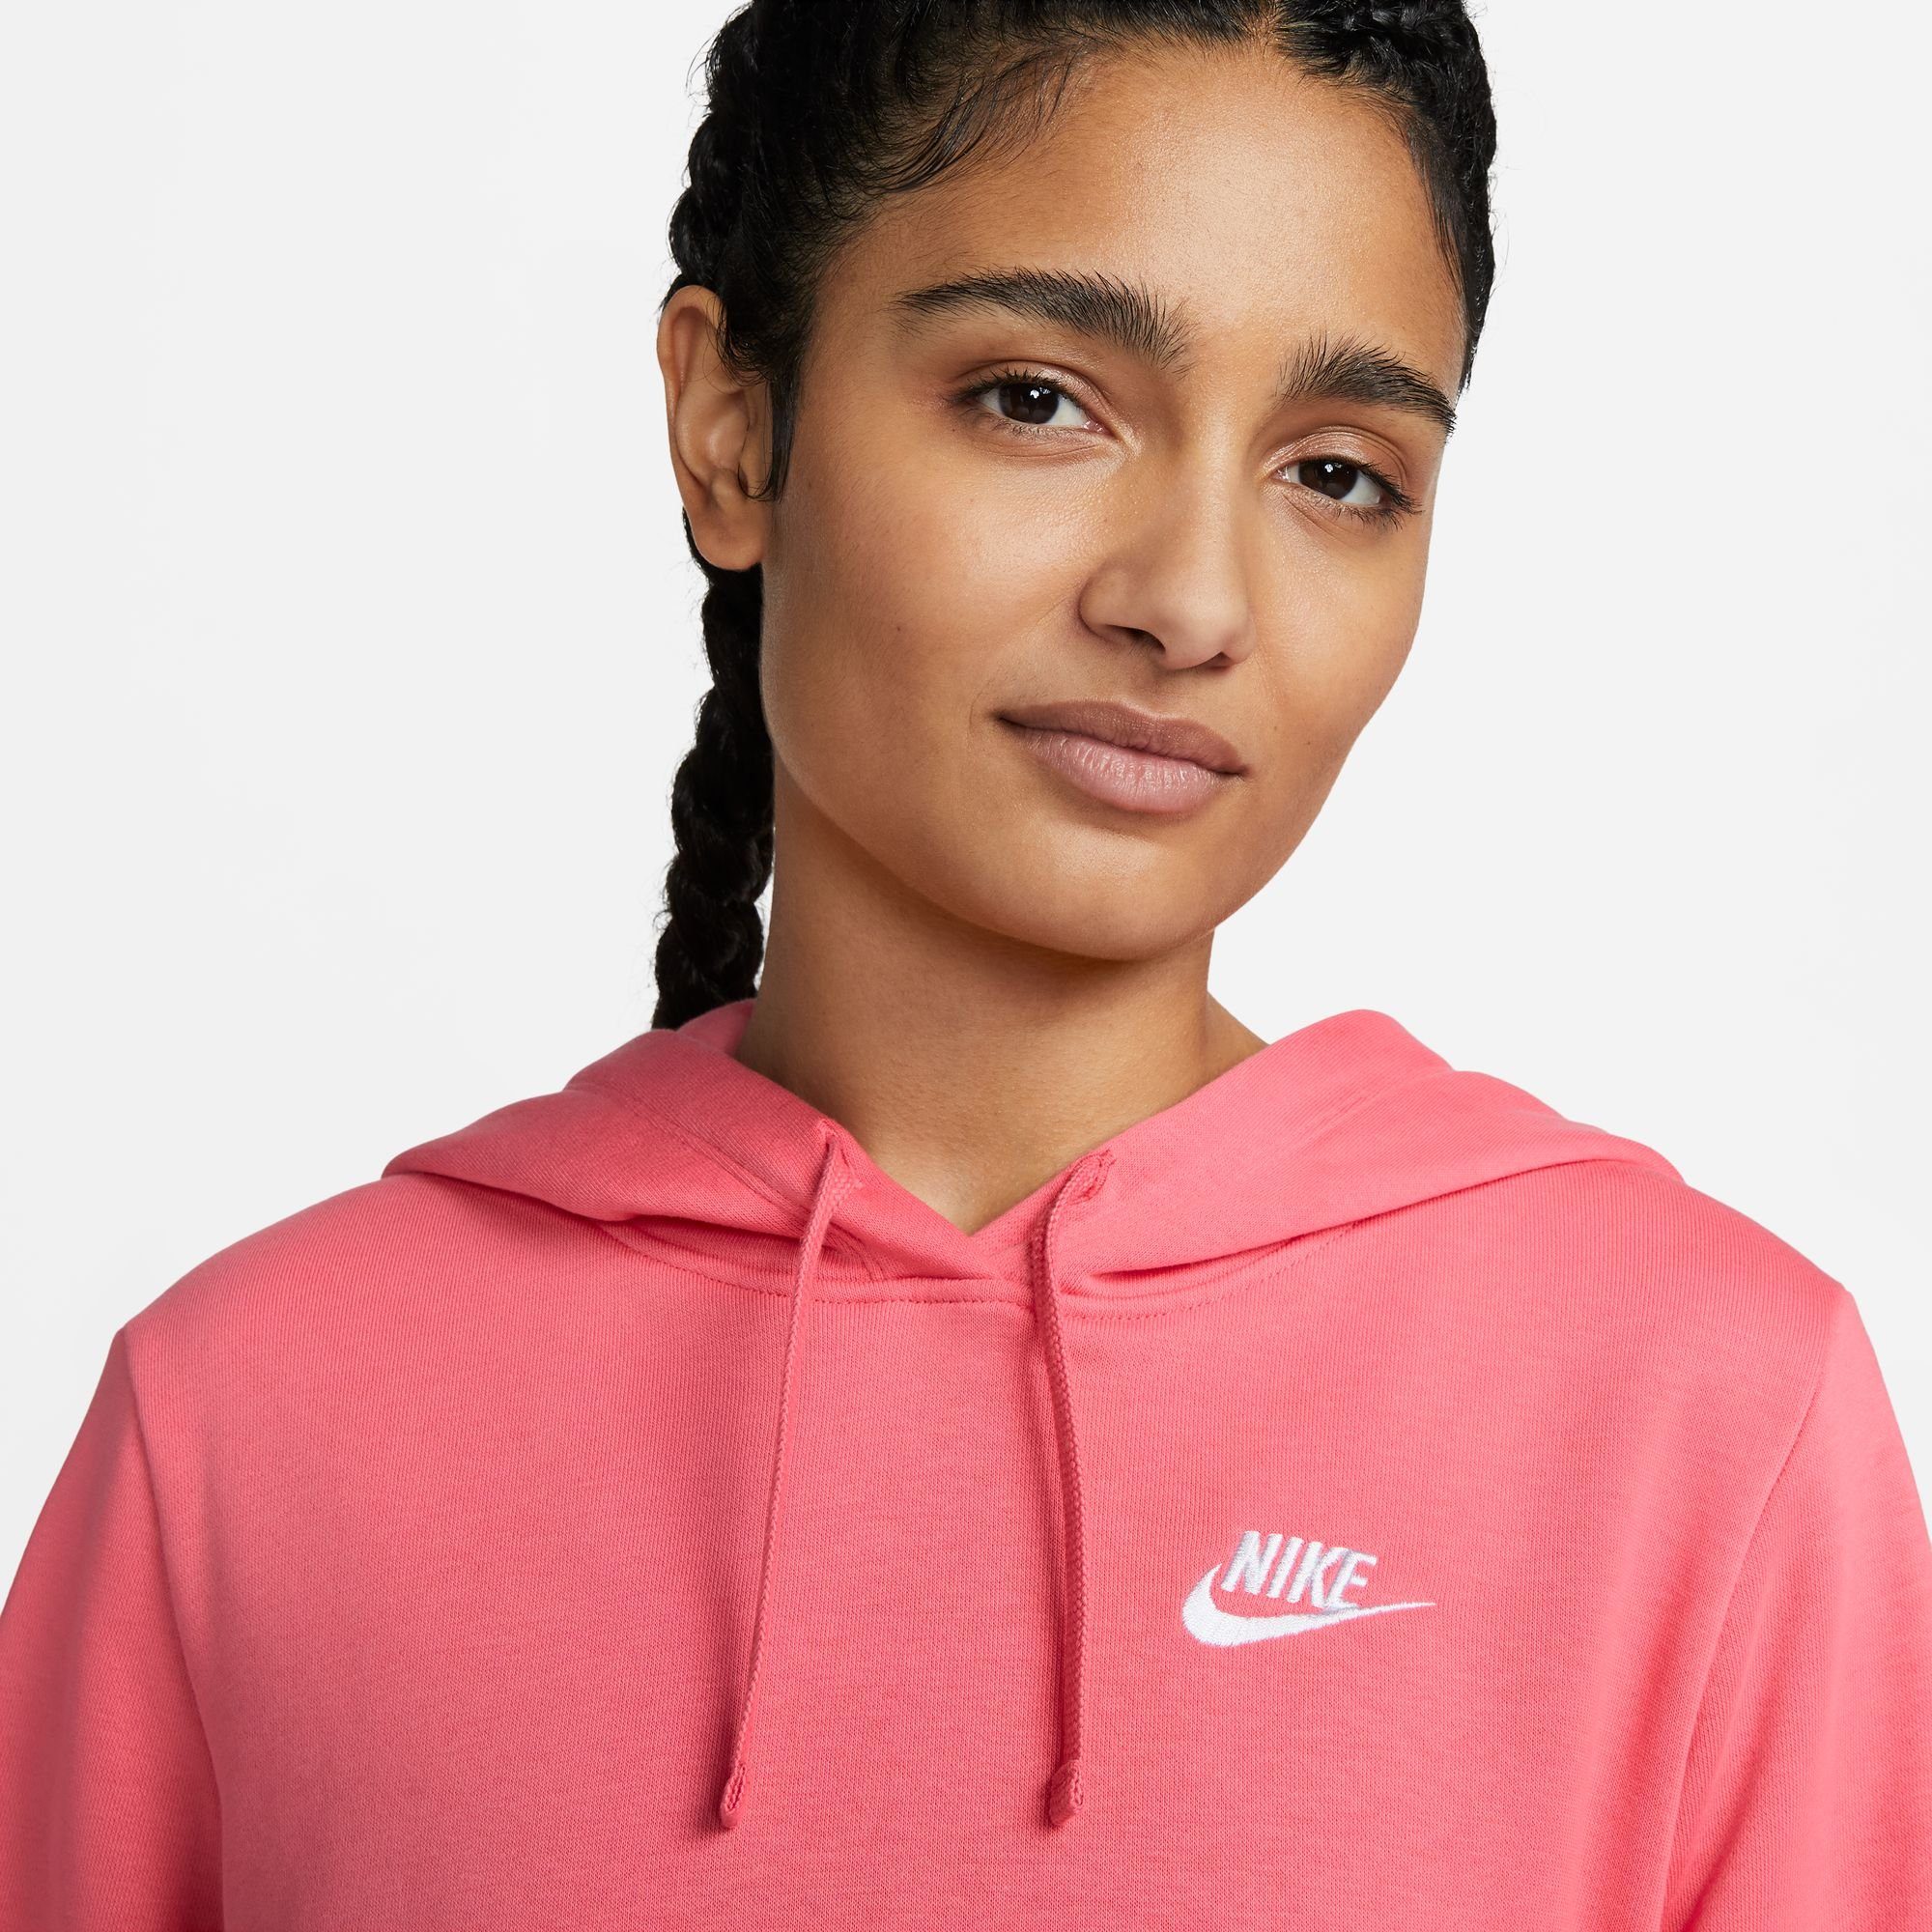 CLUB Sportswear PULLOVER WOMEN'S FLEECE Kapuzensweatshirt HOODIE orange Nike